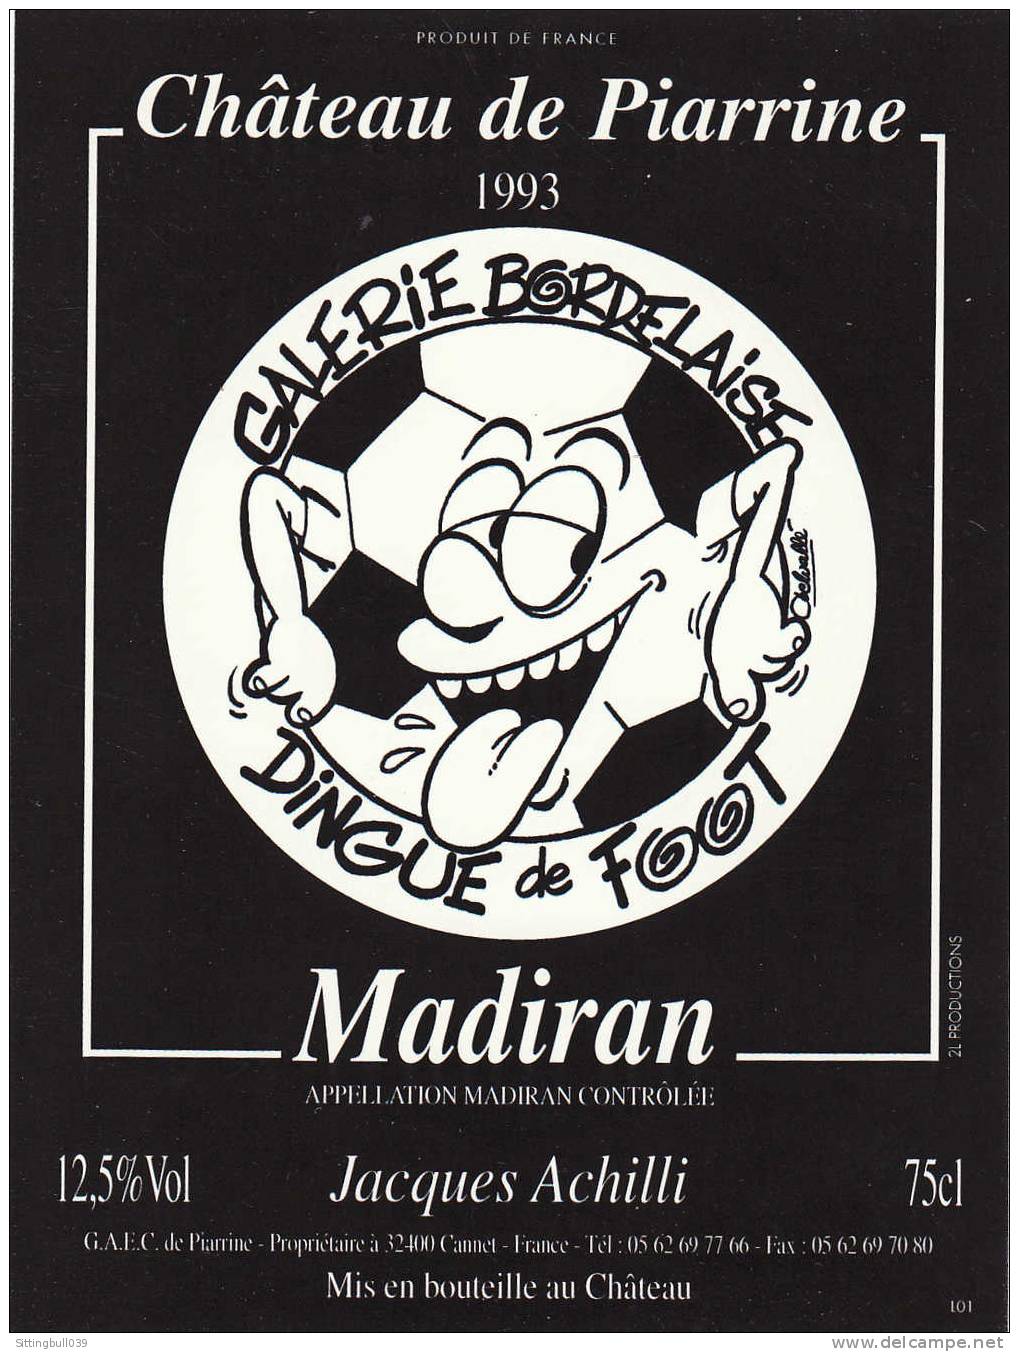 Delvallé. Galerie Bordelaise, Dingue De Foot. Etiquette De Vin, Château Piarrine Pour Un Madiran 1993. - Objets Publicitaires